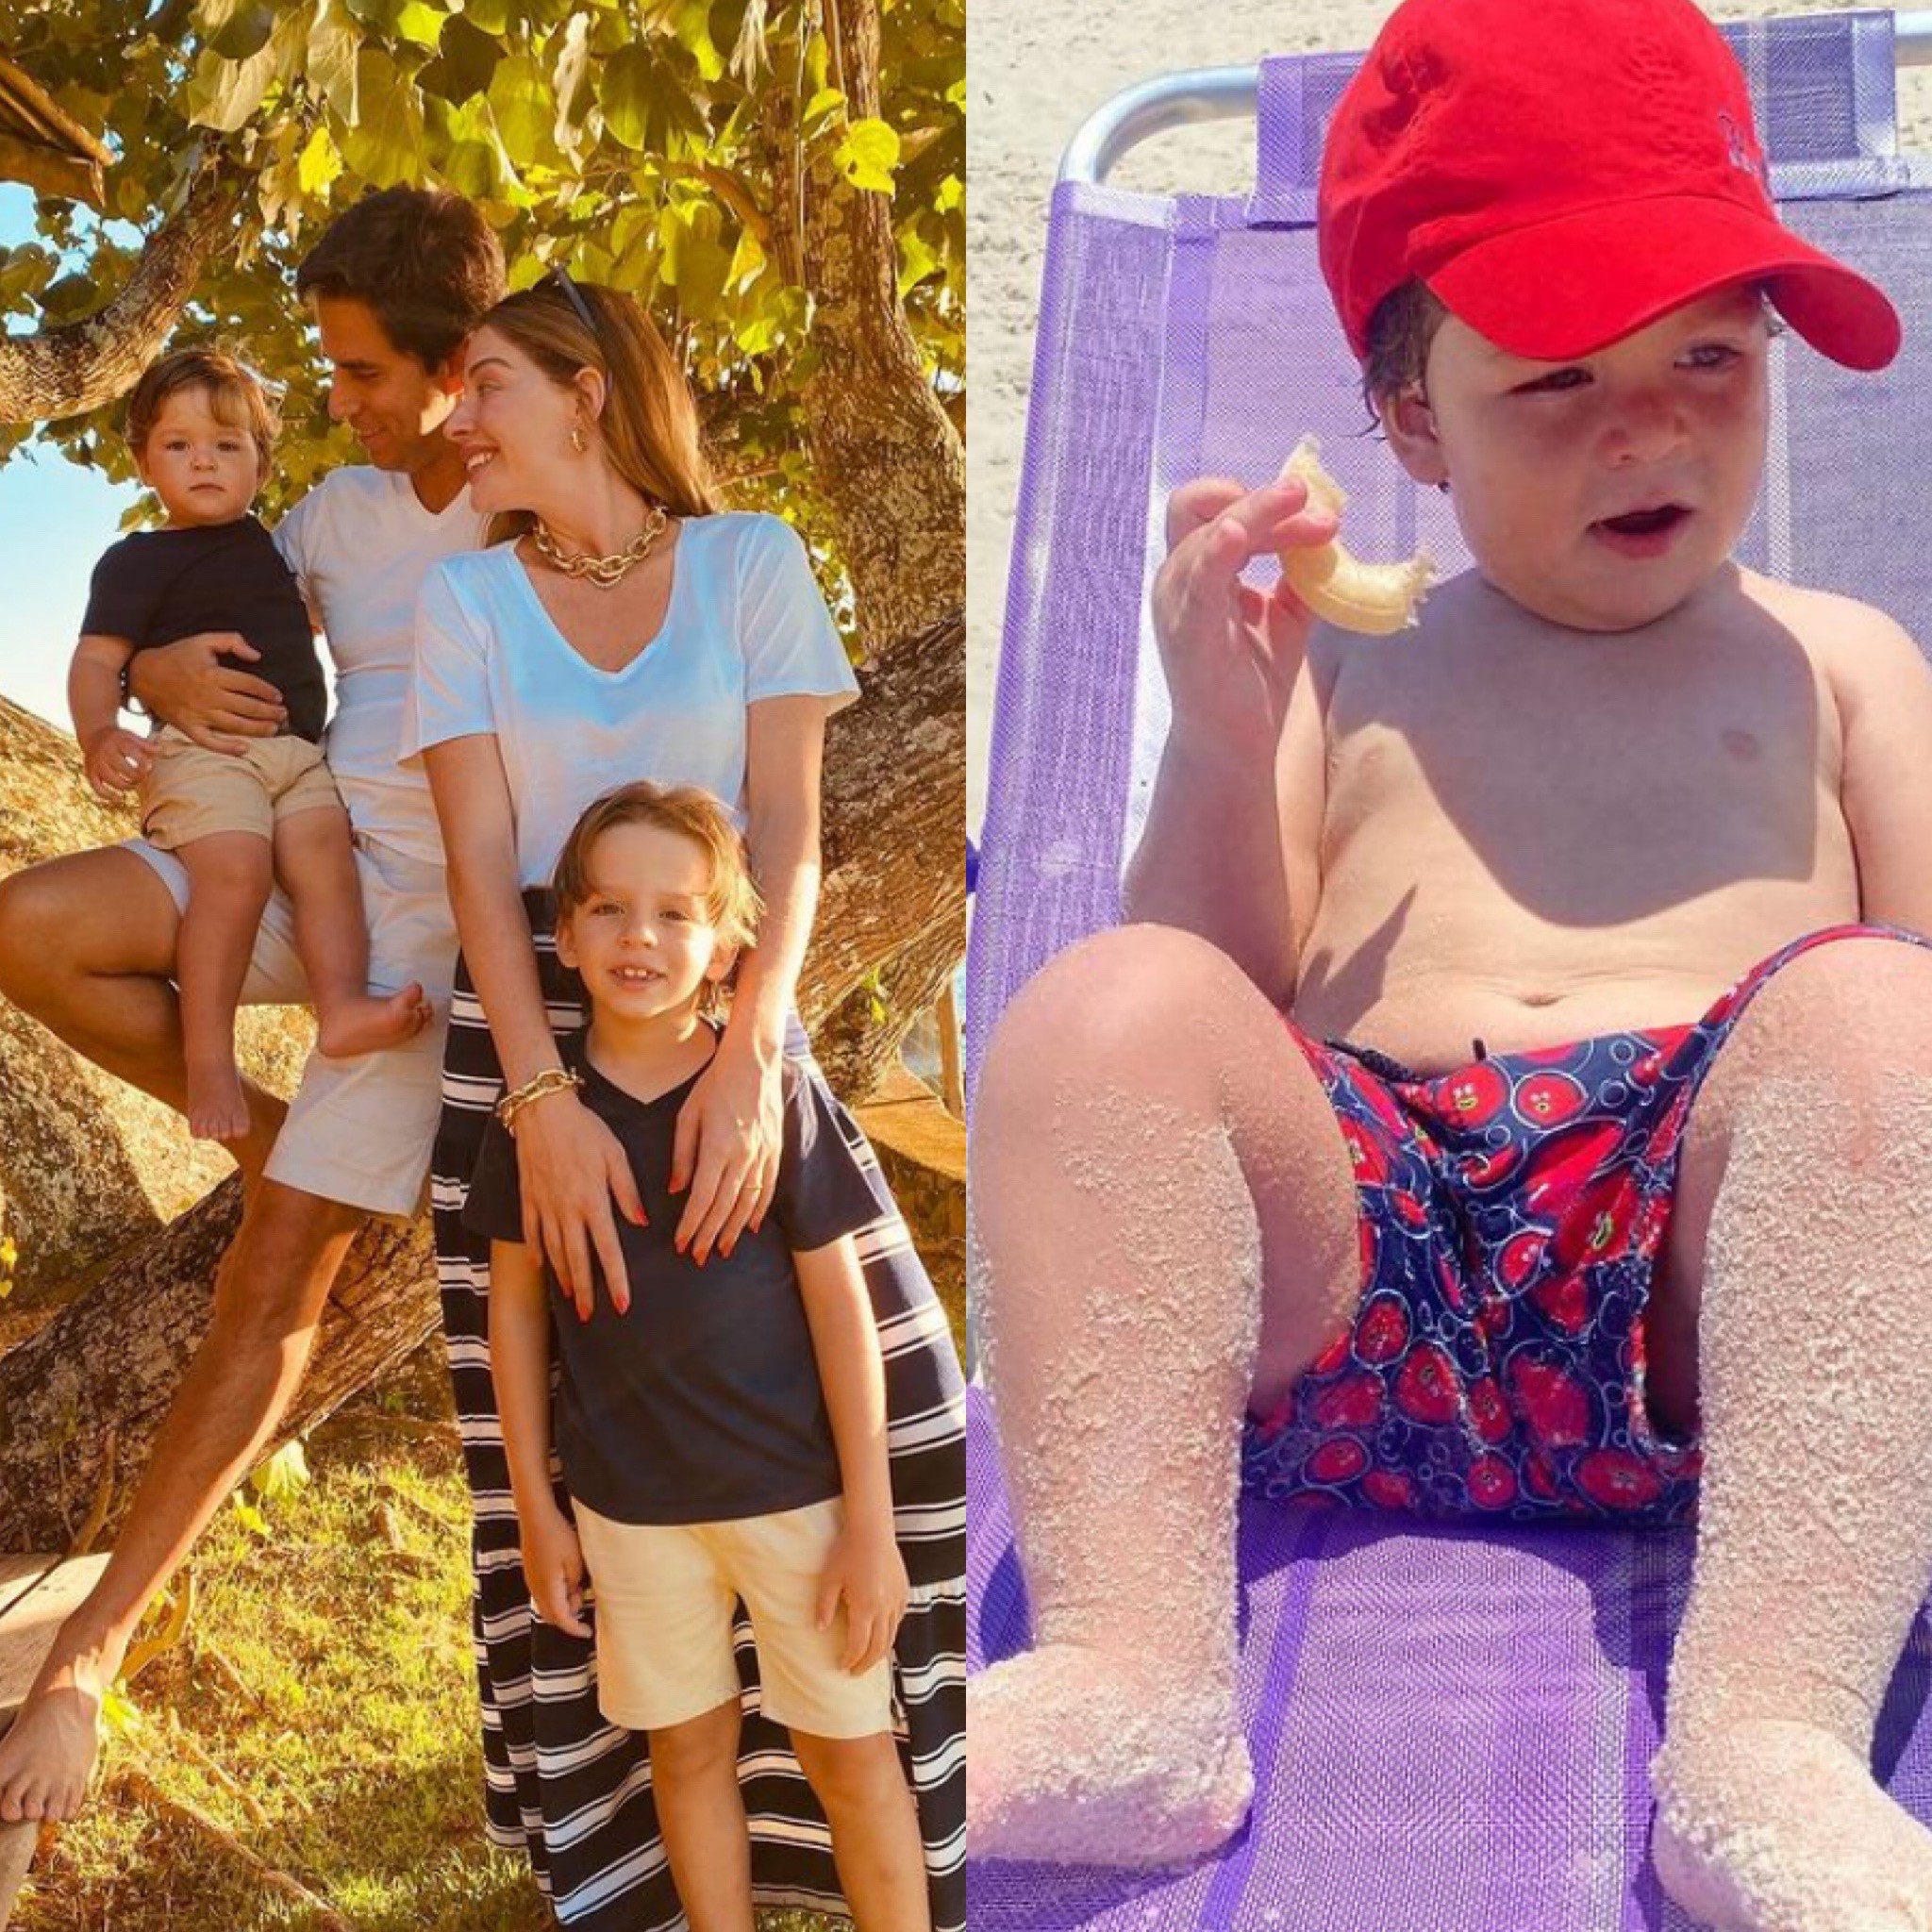 Luma Costa derrete web ao compartilhar fotos do filho curtindo a praia: 